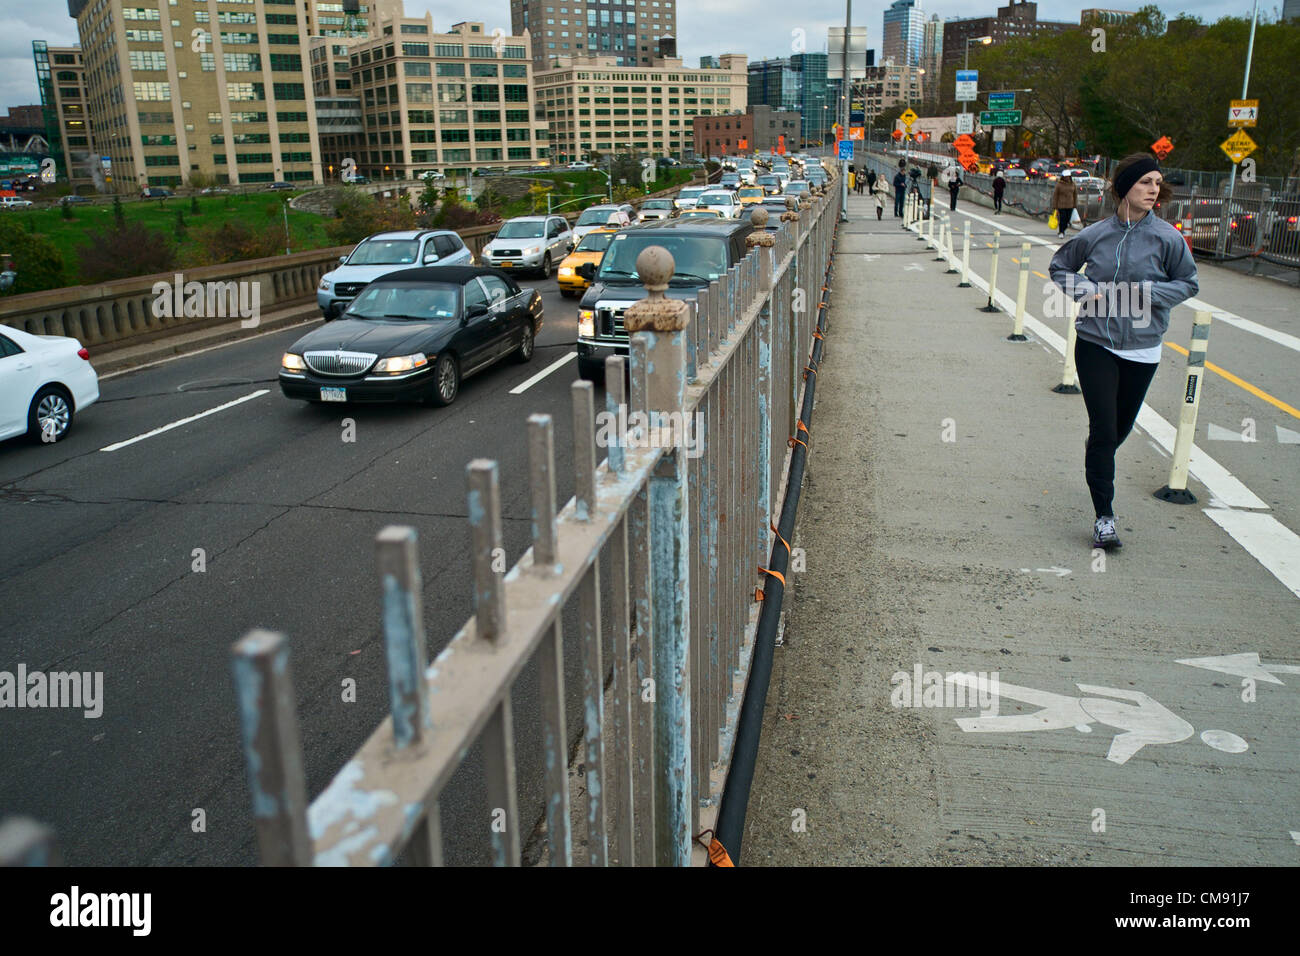 Ottobre 31, 2012, New York, NY, USA. Due giorni dopo l uragano Sandy devastò parti di New York City, driver per chi ama fare jogging e walkers croce nella parte inferiore di Manhattan sul ponte di Brooklyn. Foto Stock